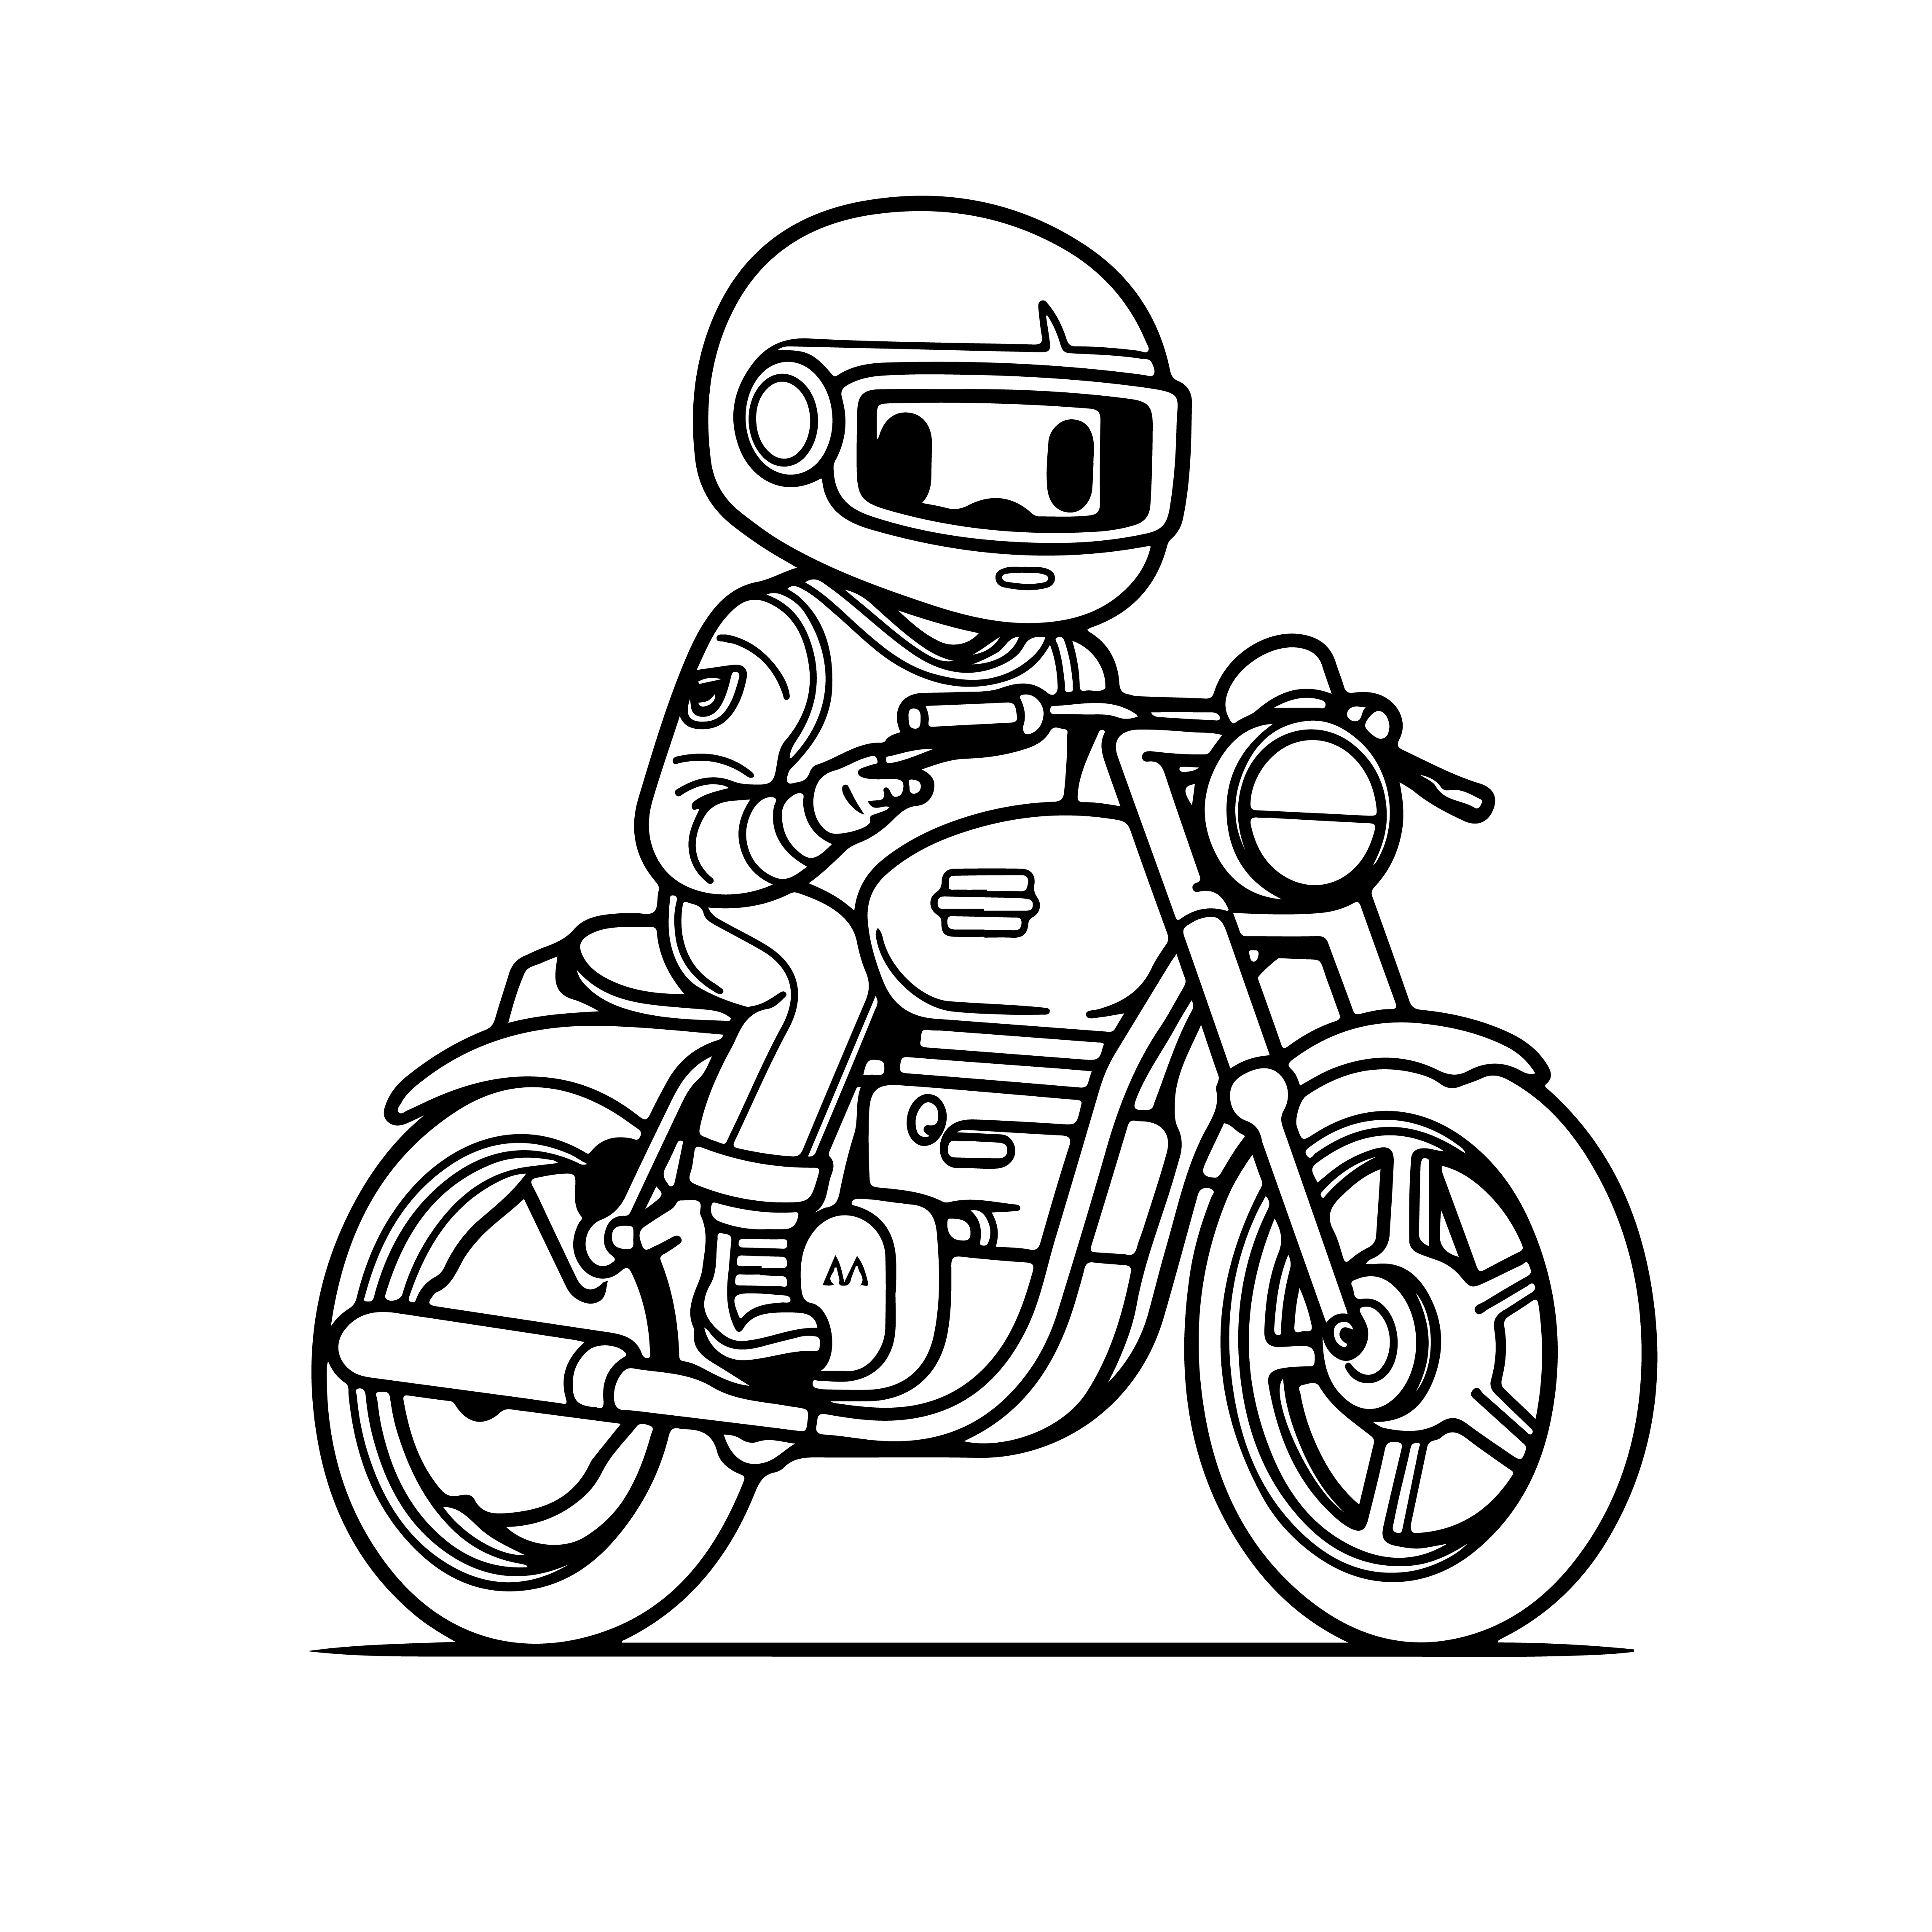 Раскраска мотоцикл «Гром и молния» формата А4 в высоком качестве